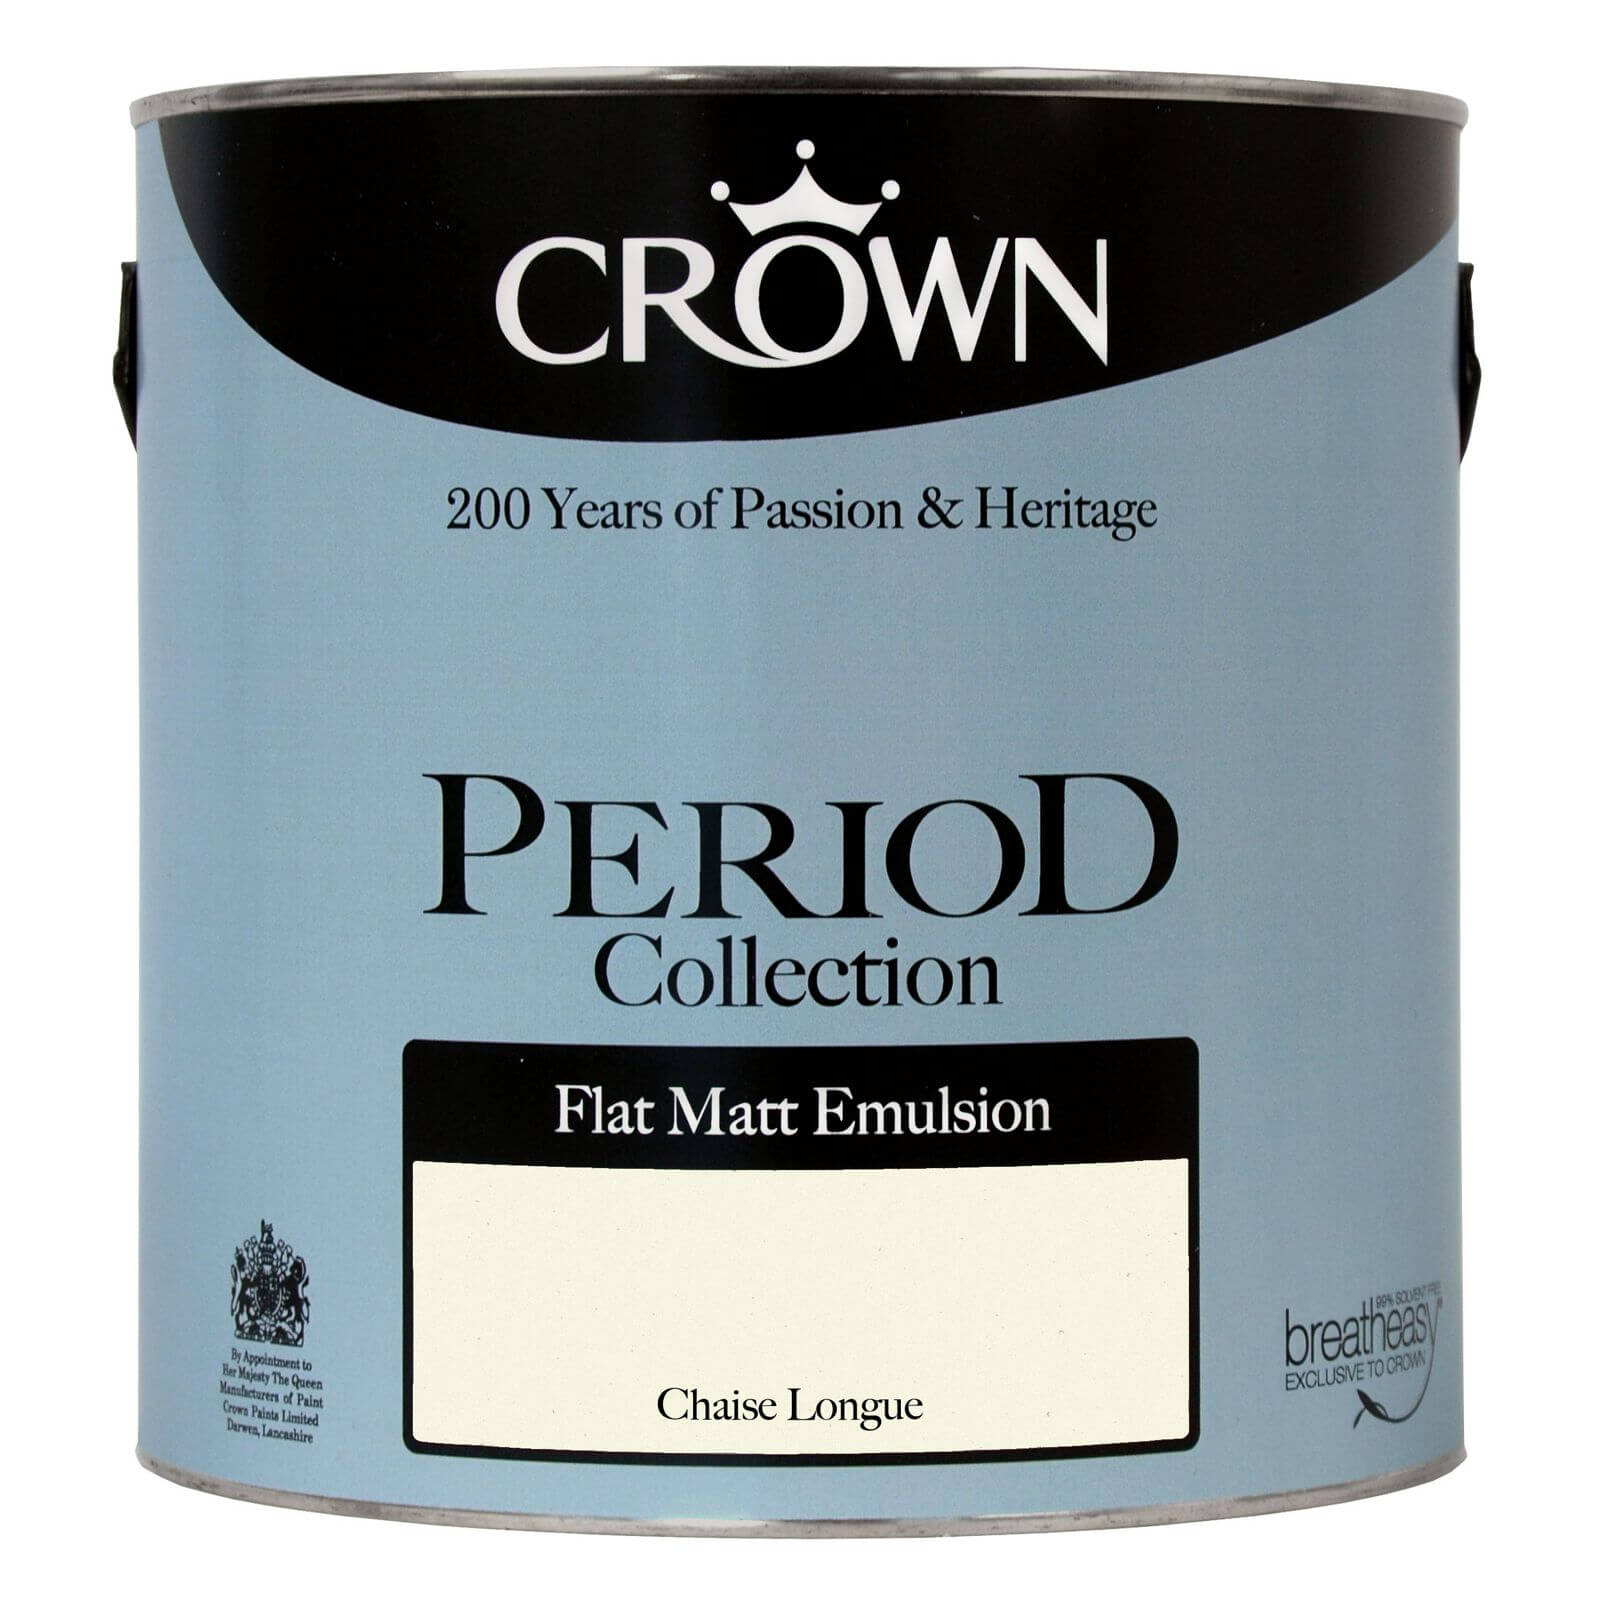 Crown Period Collection Chaise Longue - Flat Matt Emulsion Paint - 2.5L